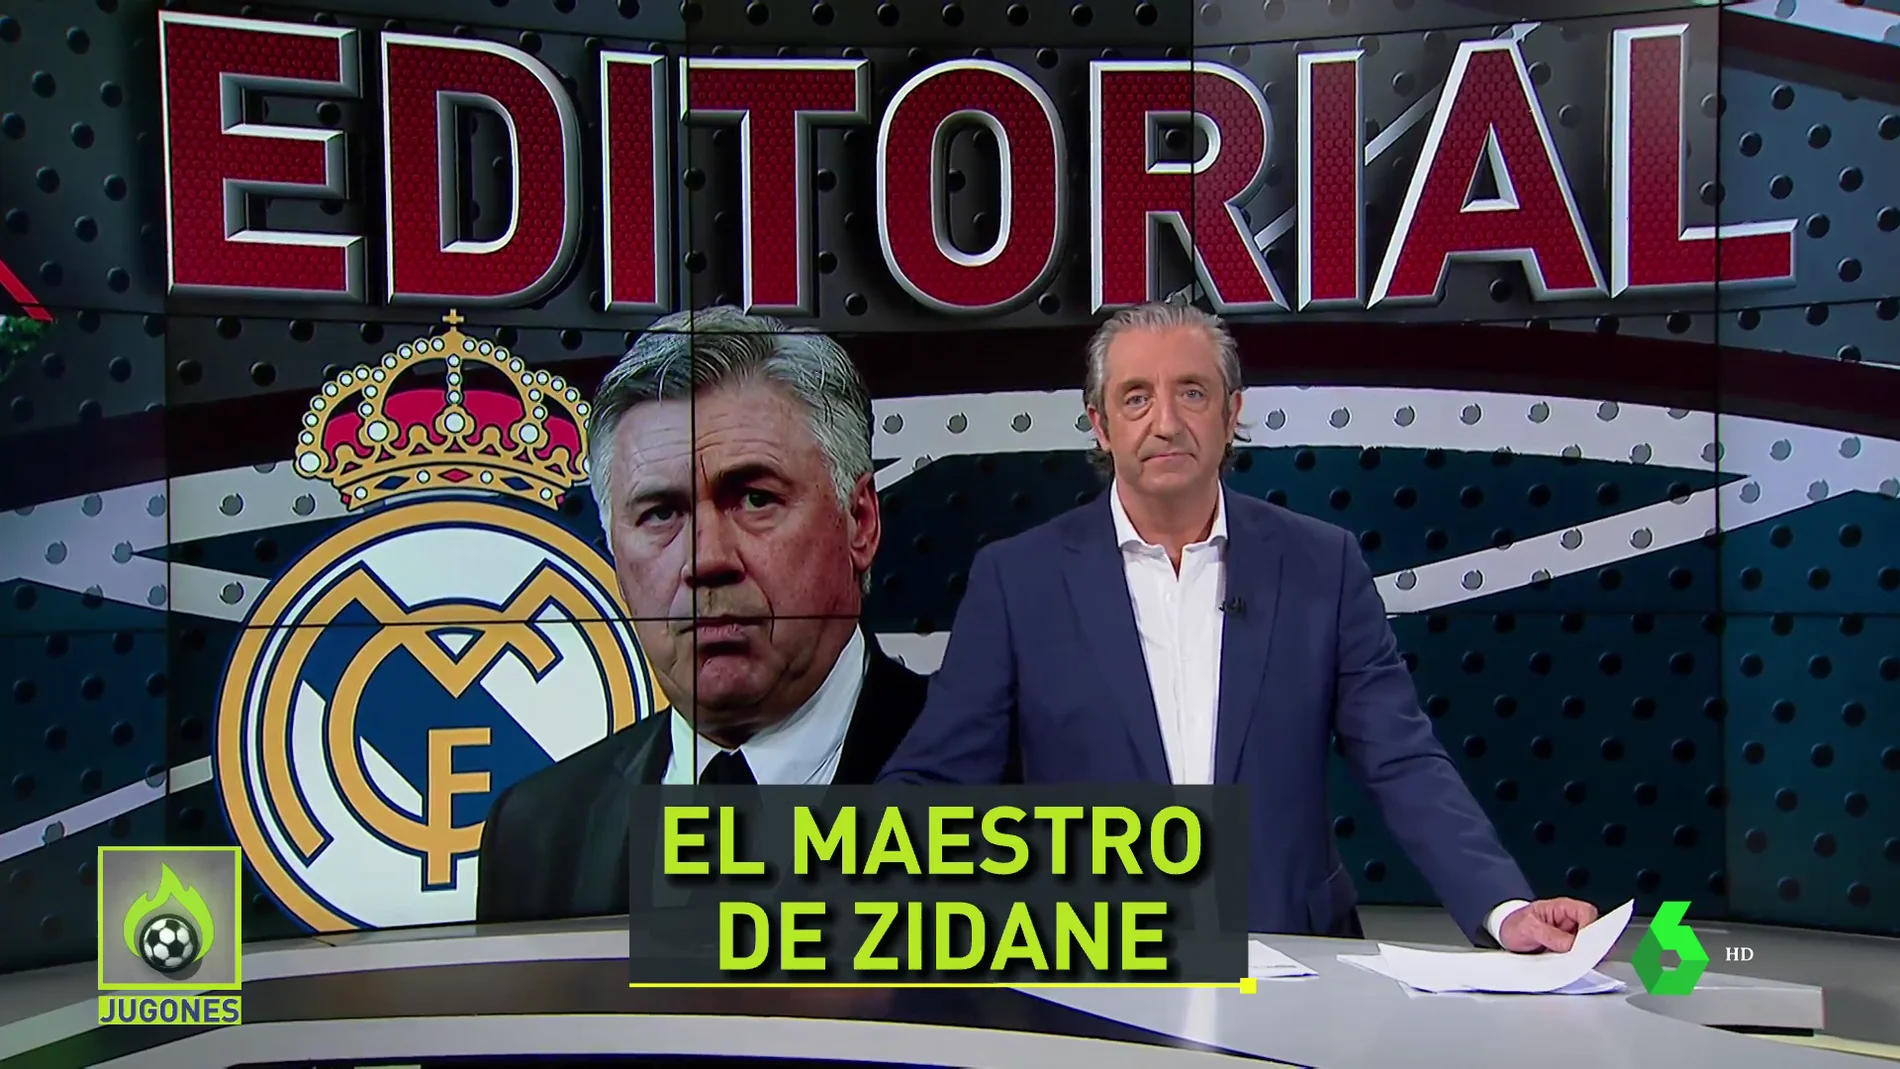 Pedrerol analiza el fichaje de Ancelotti: "Vuelve el maestro de Zidane"